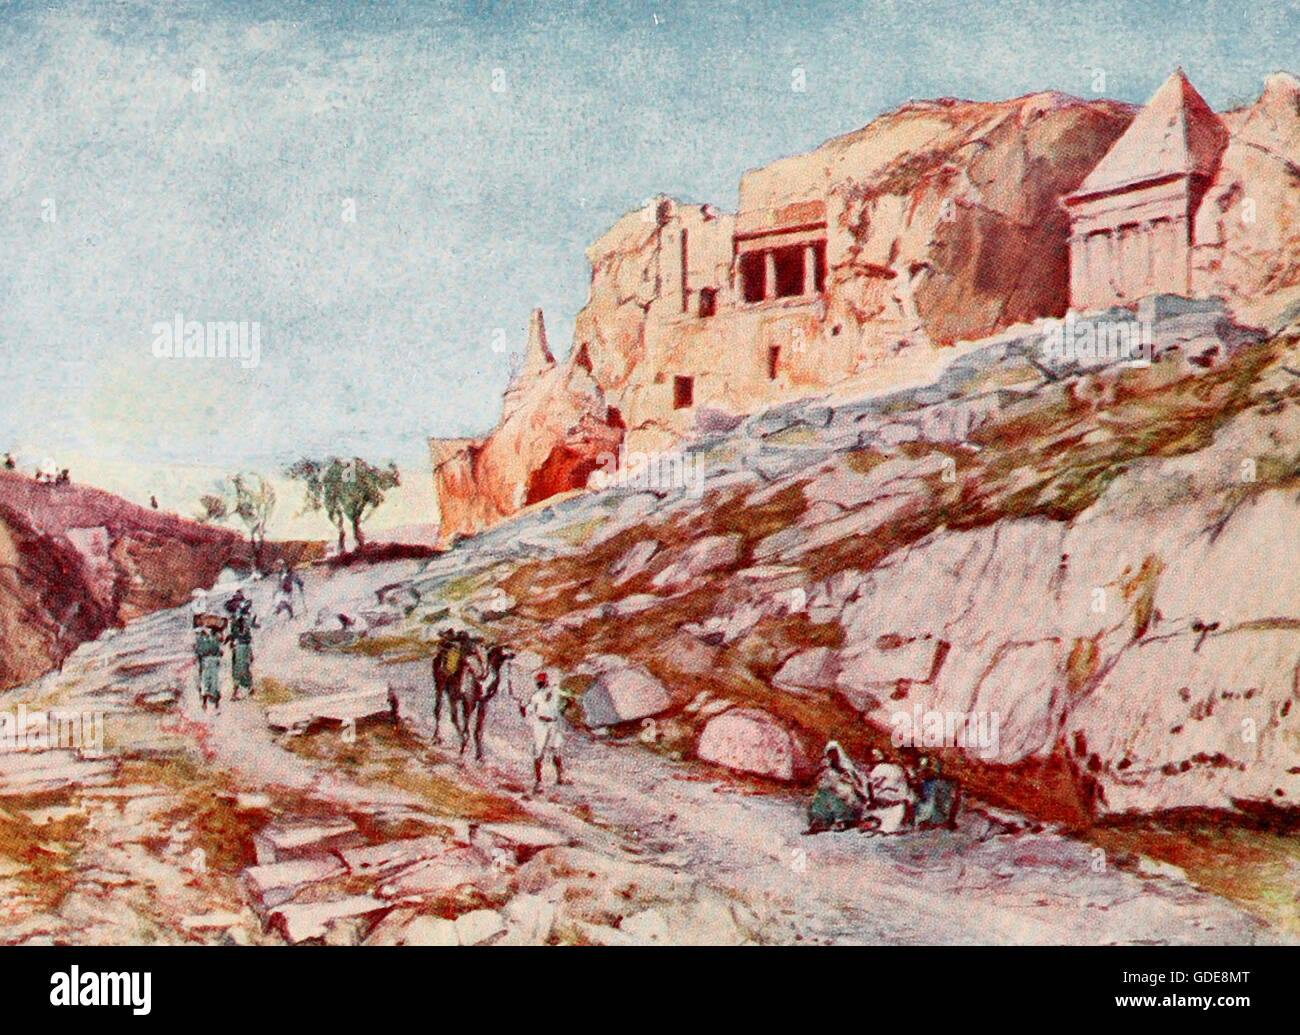 La roche des tombes de la vallée de Josaphat. Terre sainte, vers 1900 Banque D'Images